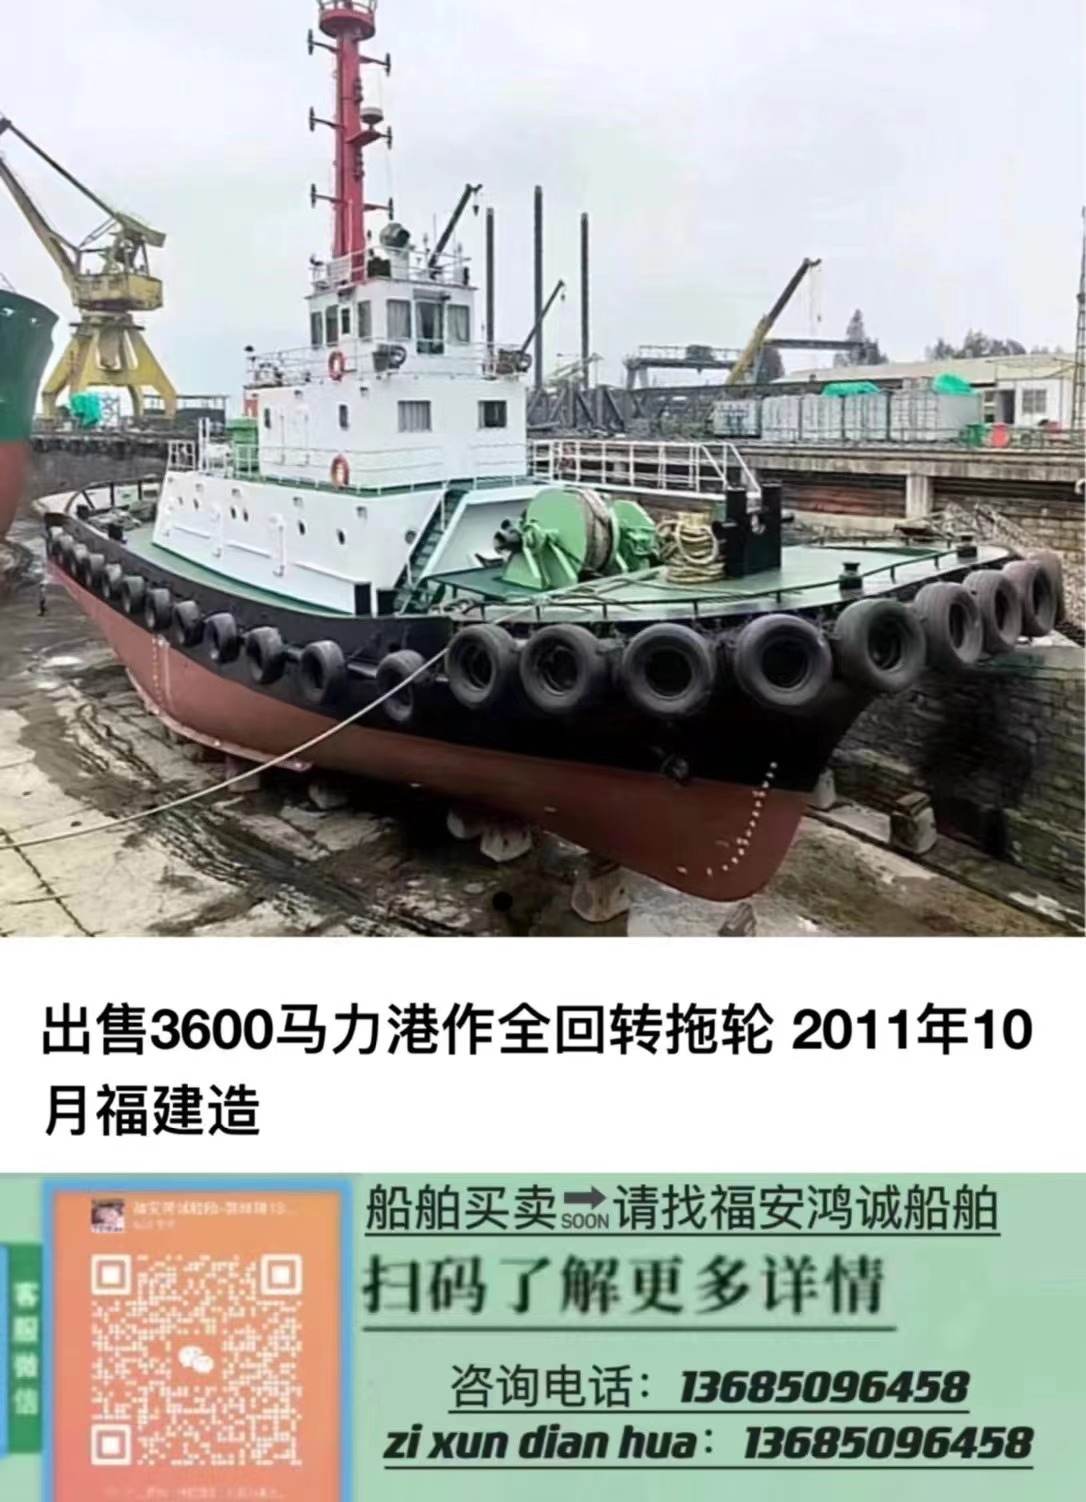 出售3600BHP港作全回转拖轮 ​2011年10月福建造/ CCS中国船级社